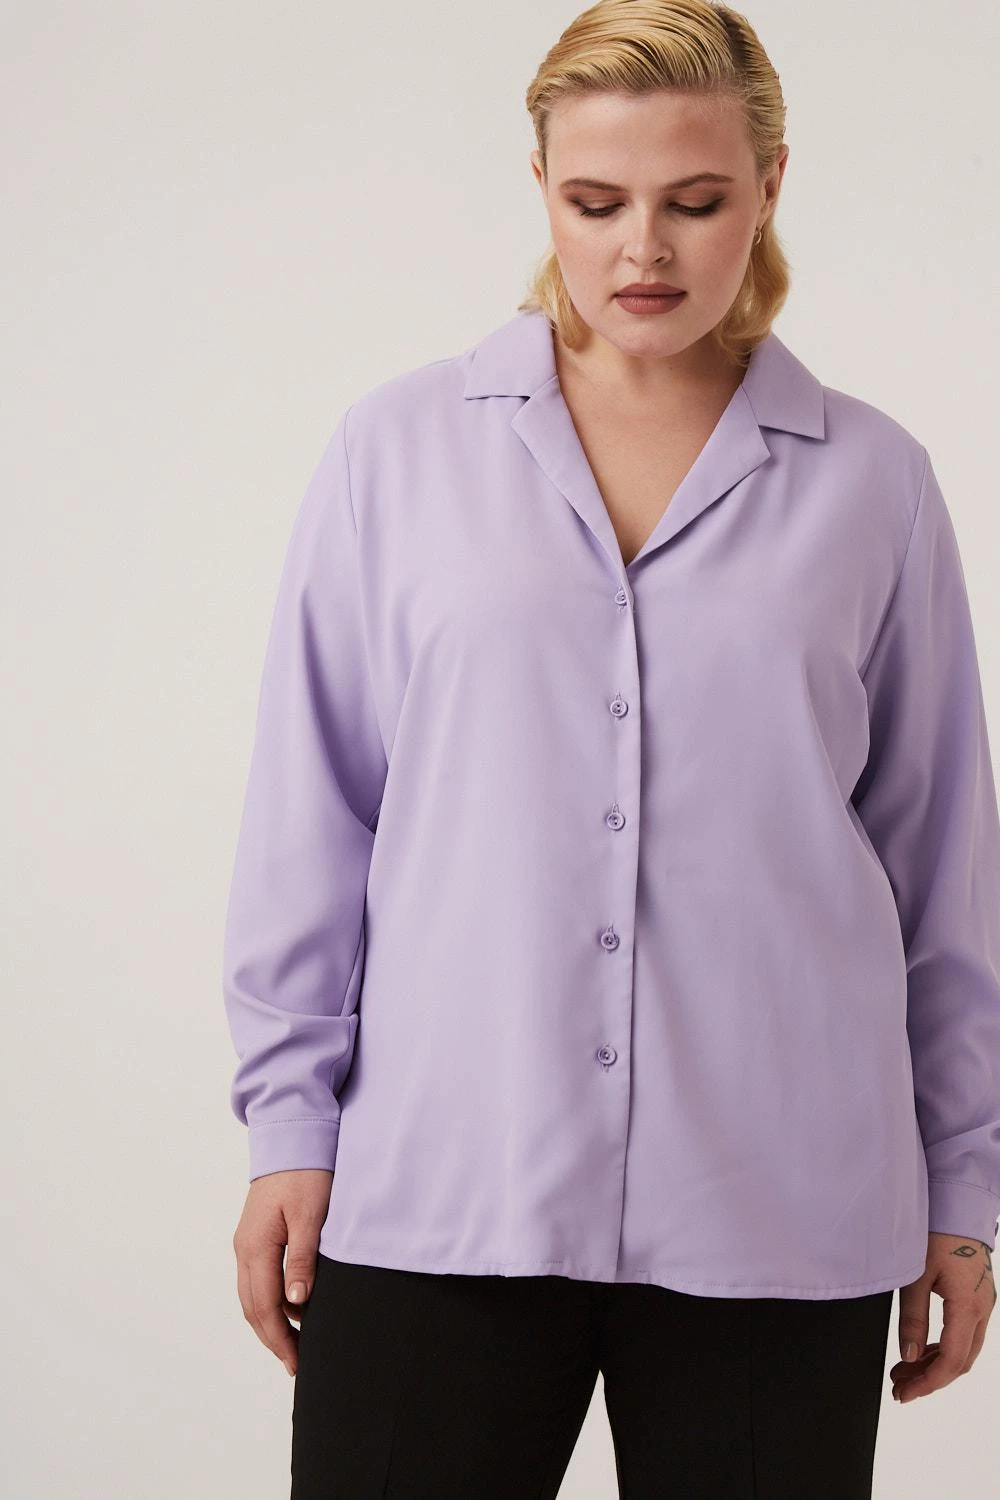 Сиреневая блузка большого размера купить онлайн 